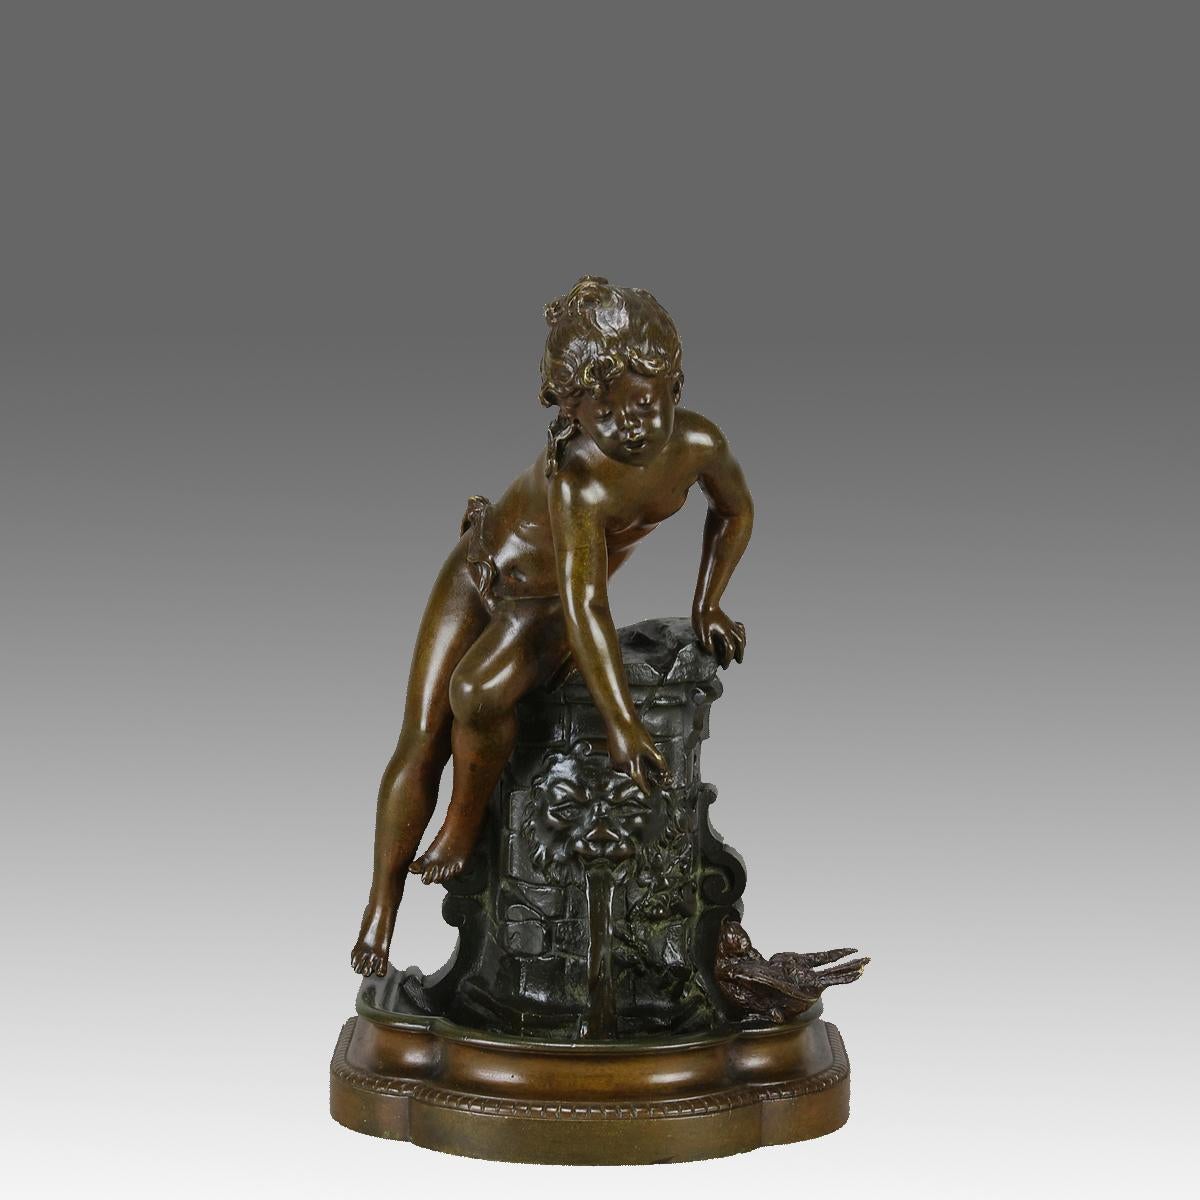 Eine sehr schöne Bronzefigur aus dem späten 19. Jahrhundert, die ein junges Mädchen darstellt, das auf einem Brunnen sitzt und einen kleinen Vogel füttert. Die Figur weist eine exzellente, reichhaltige braune Patina und sehr feine, handgefertigte